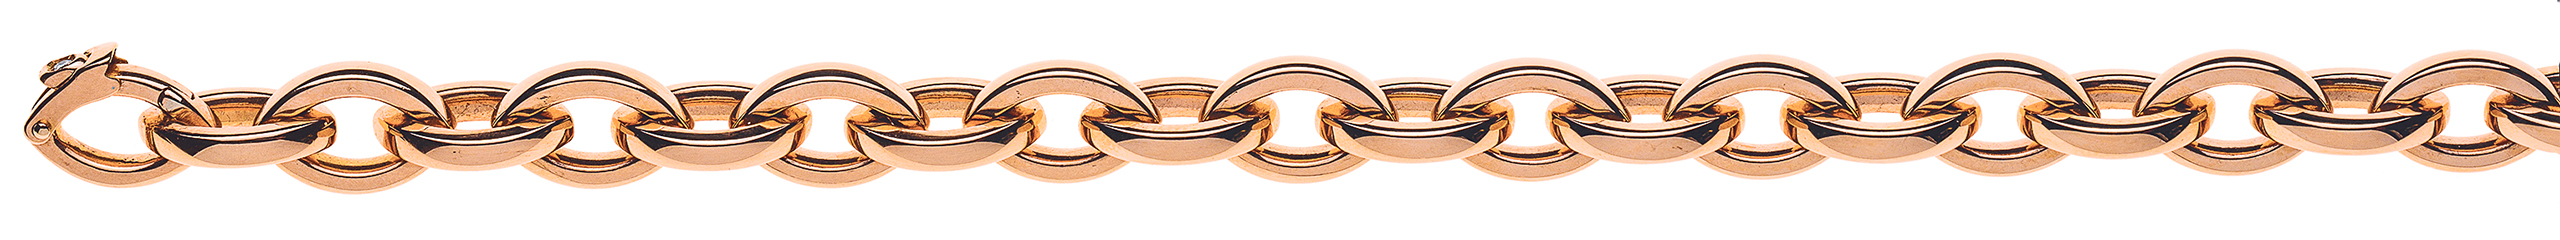 AURONOS Prestige Bracelet 18k rose gold navette chain 9.5mm 20cm 